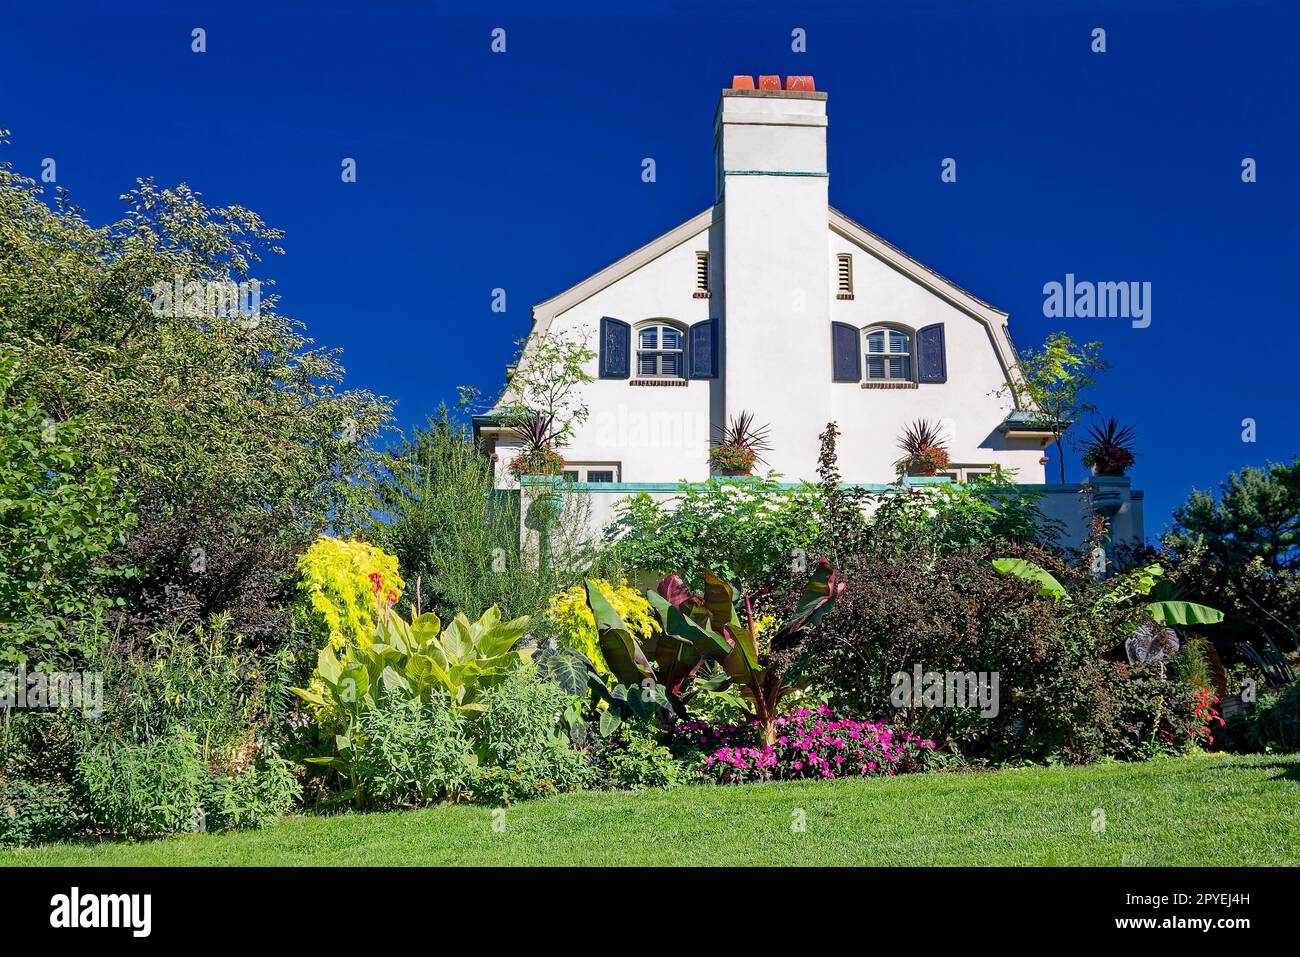 Chanticleer House, vue latérale, jardin ; 1913, antique, blanc, volets noirs, cheminée, herbe verte, arbustes, Trees, Pennsylvanie; Wayne; PA; été Banque D'Images